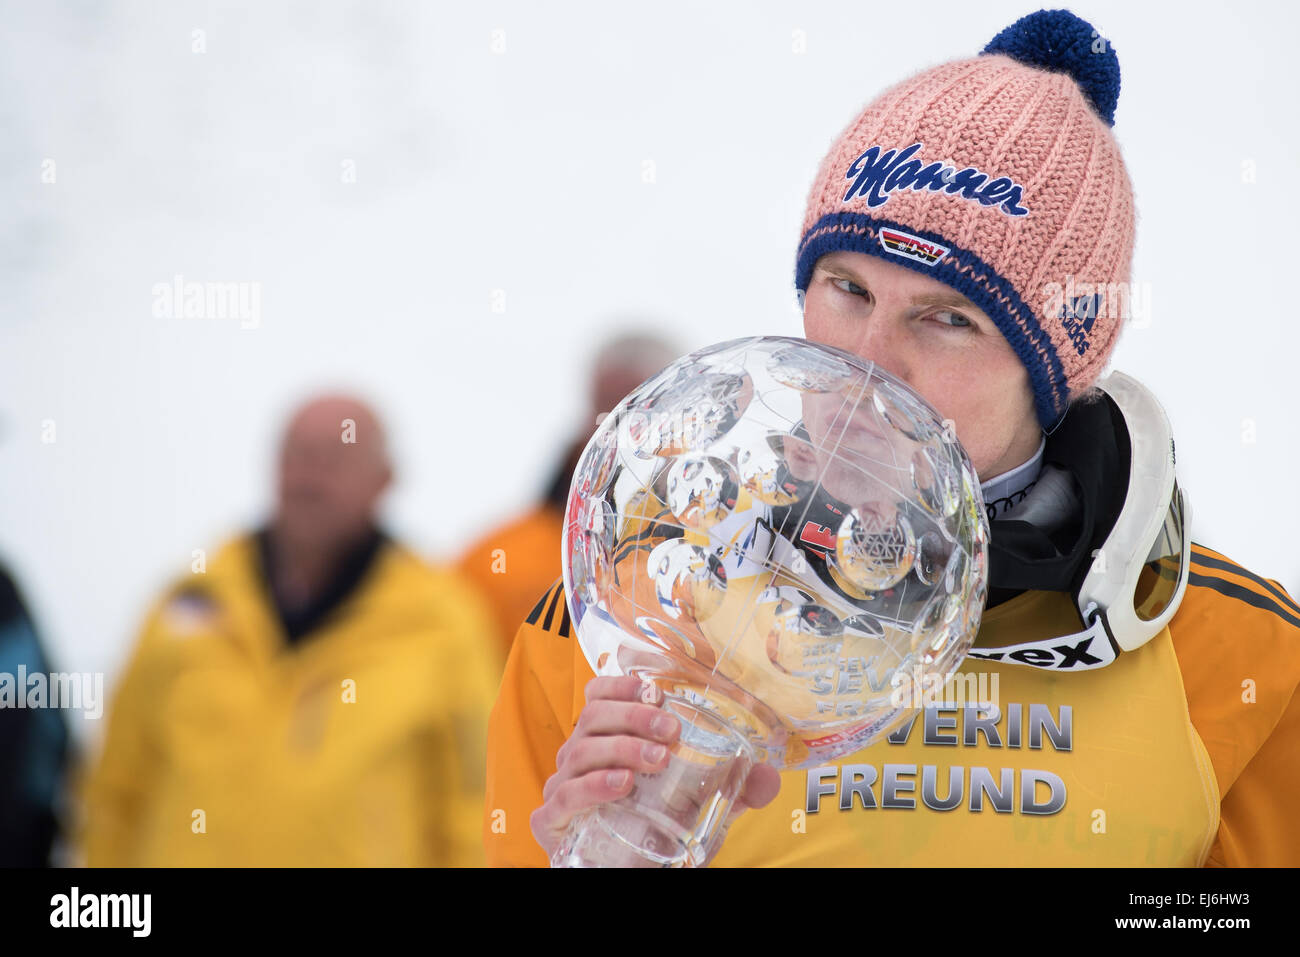 Severin Freund de l'Allemagne s'embrasser Globe de cristal pour célébrer sa  victoire en Coupe du Monde FIS de saut à ski au classement général de la  Coupe du monde de saut à